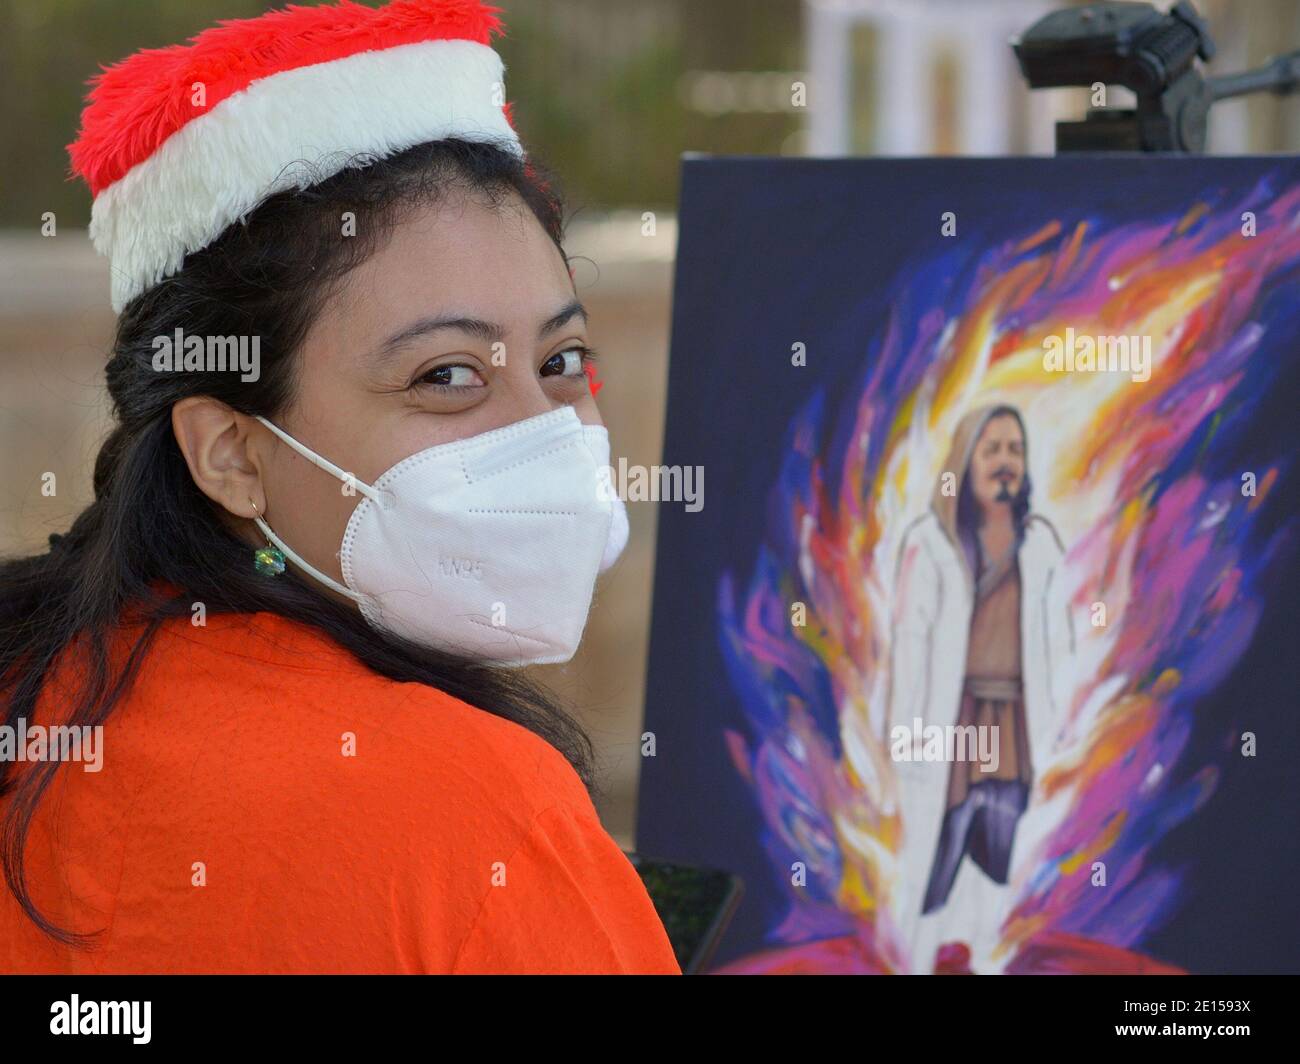 Beau jeune artiste peintre mexicain avec les yeux souriants porte un drôle chapeau de Père Noël et un masque KN95 pendant la pandémie mondiale de coronavirus. Banque D'Images